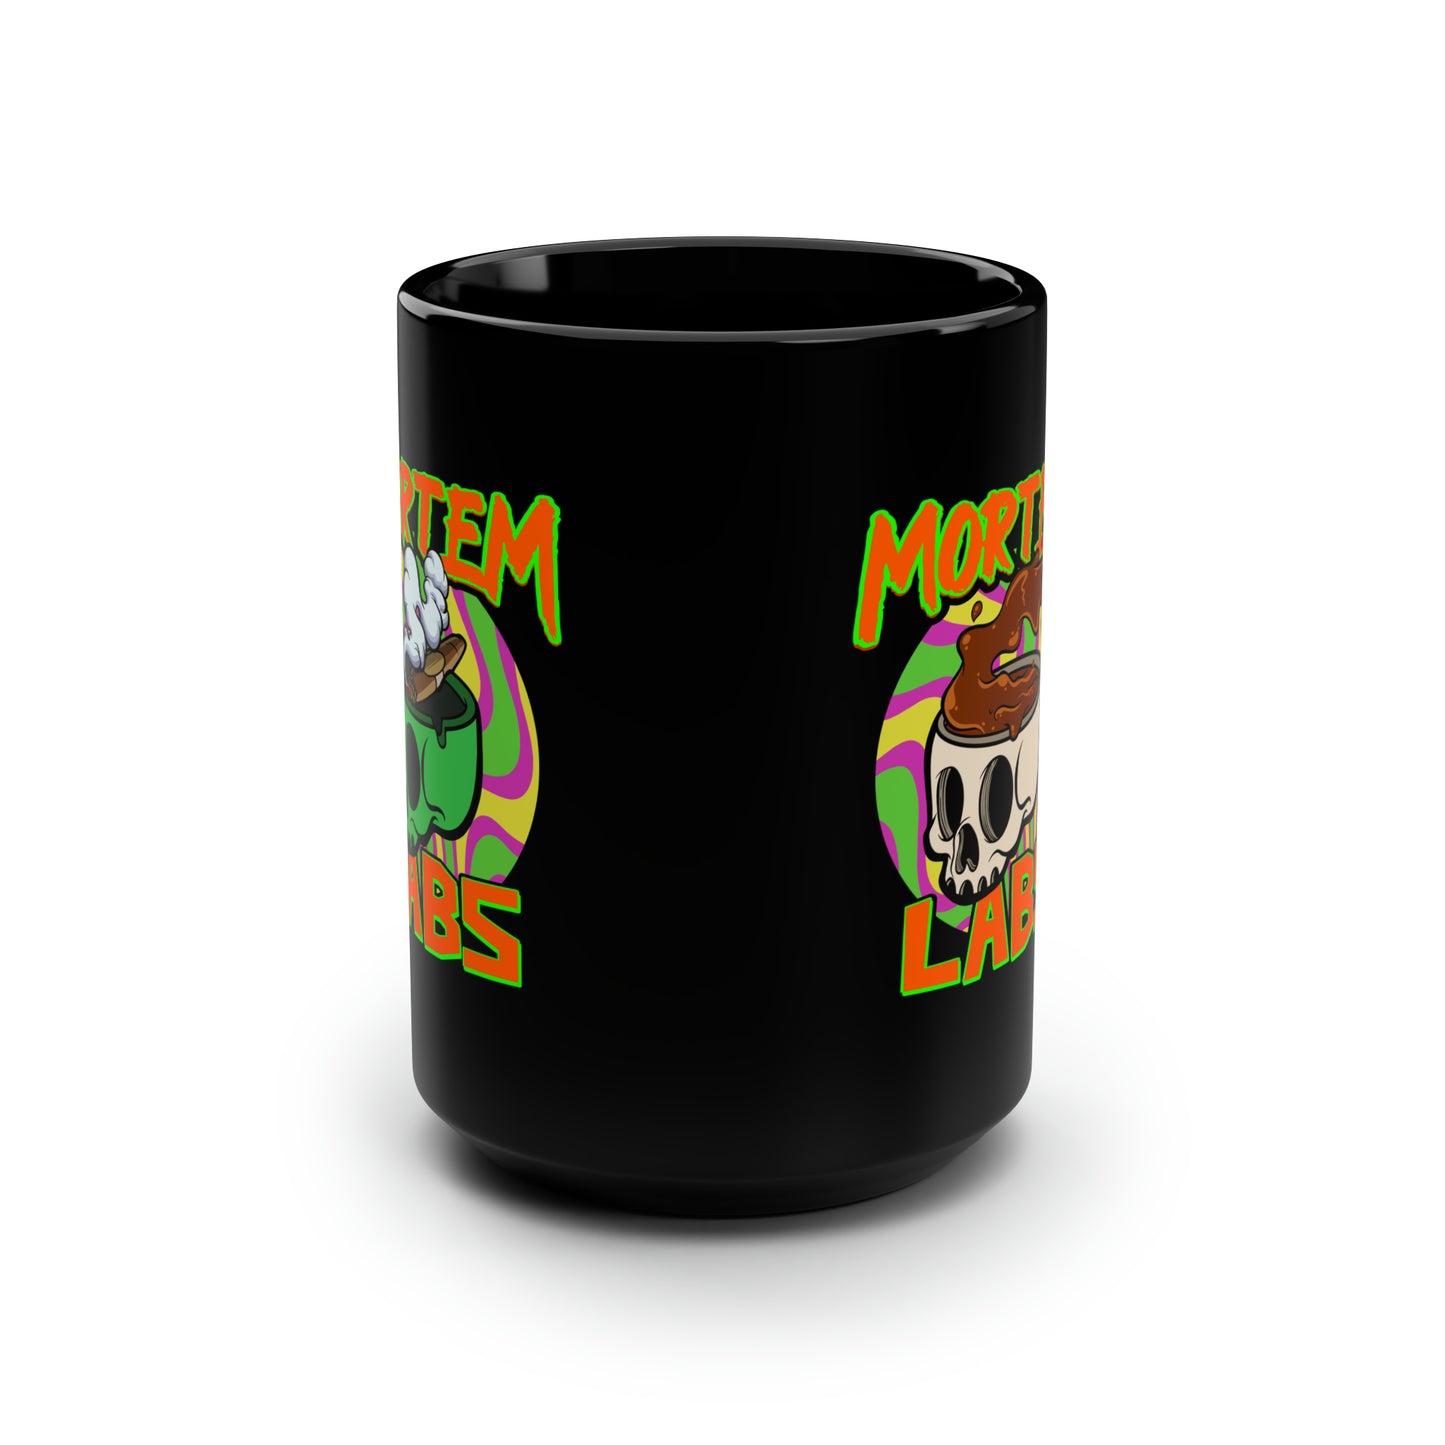 Original Mortem Labs Dual Logo Black Mug 15oz